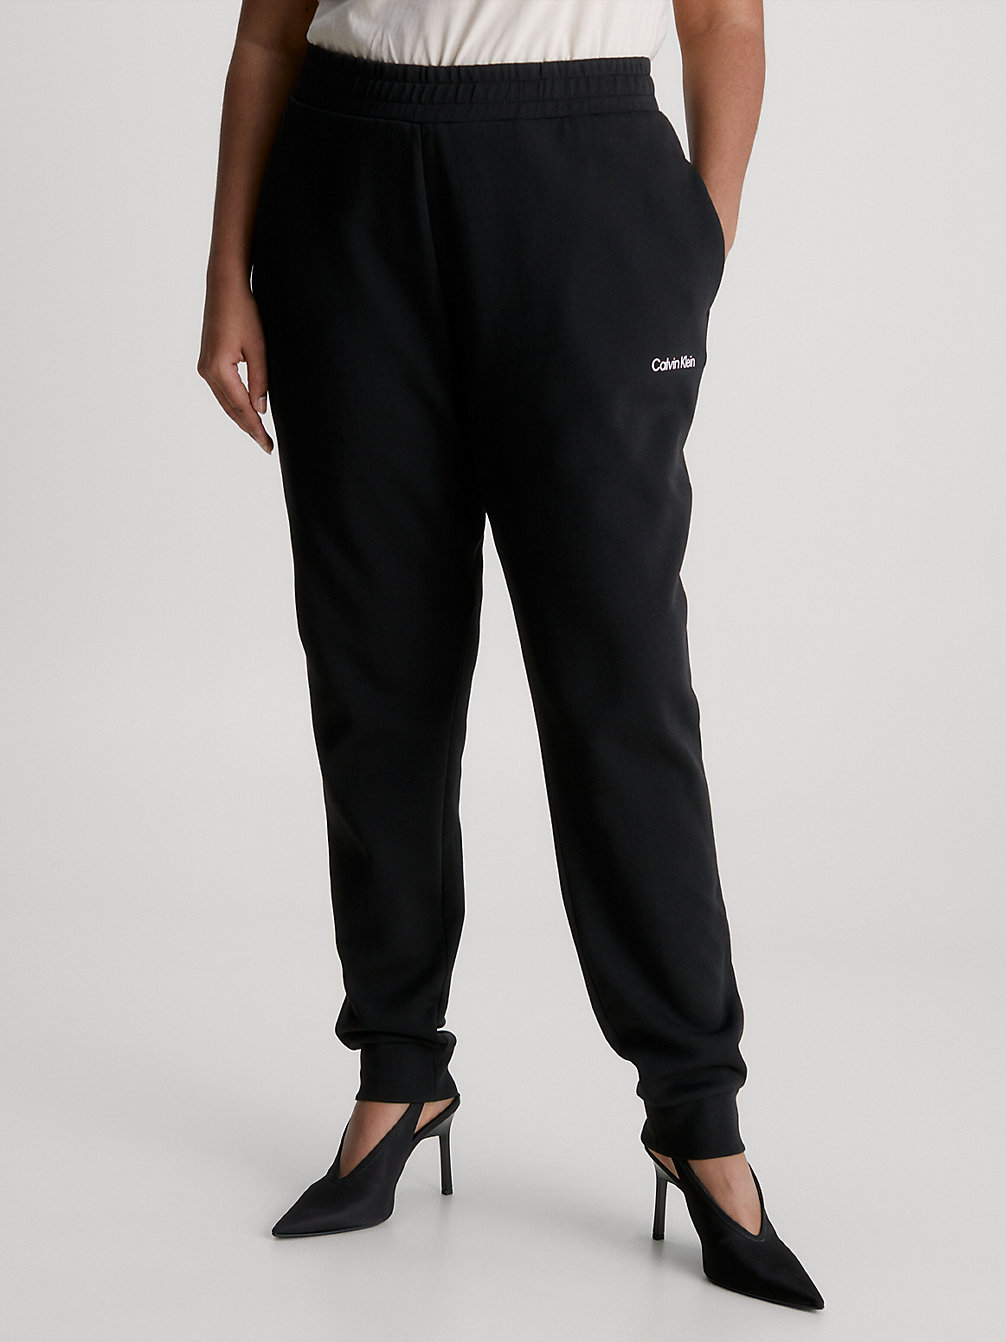 CK BLACK > Wąskie Spodnie Dresowe Plus Size > undefined Kobiety - Calvin Klein